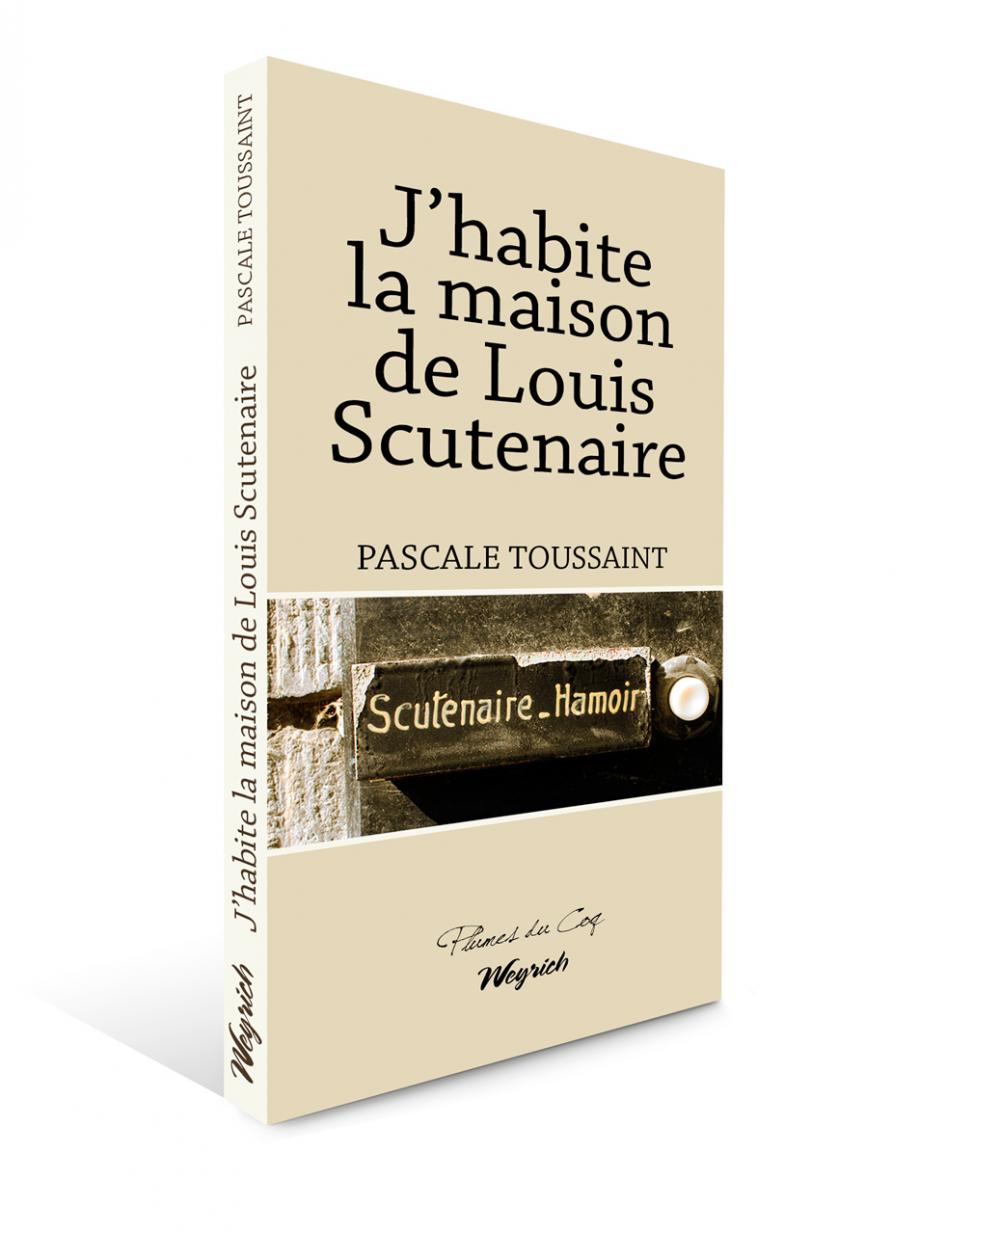 EBOOK - Habite la maison de Louis Scutenaire (J')